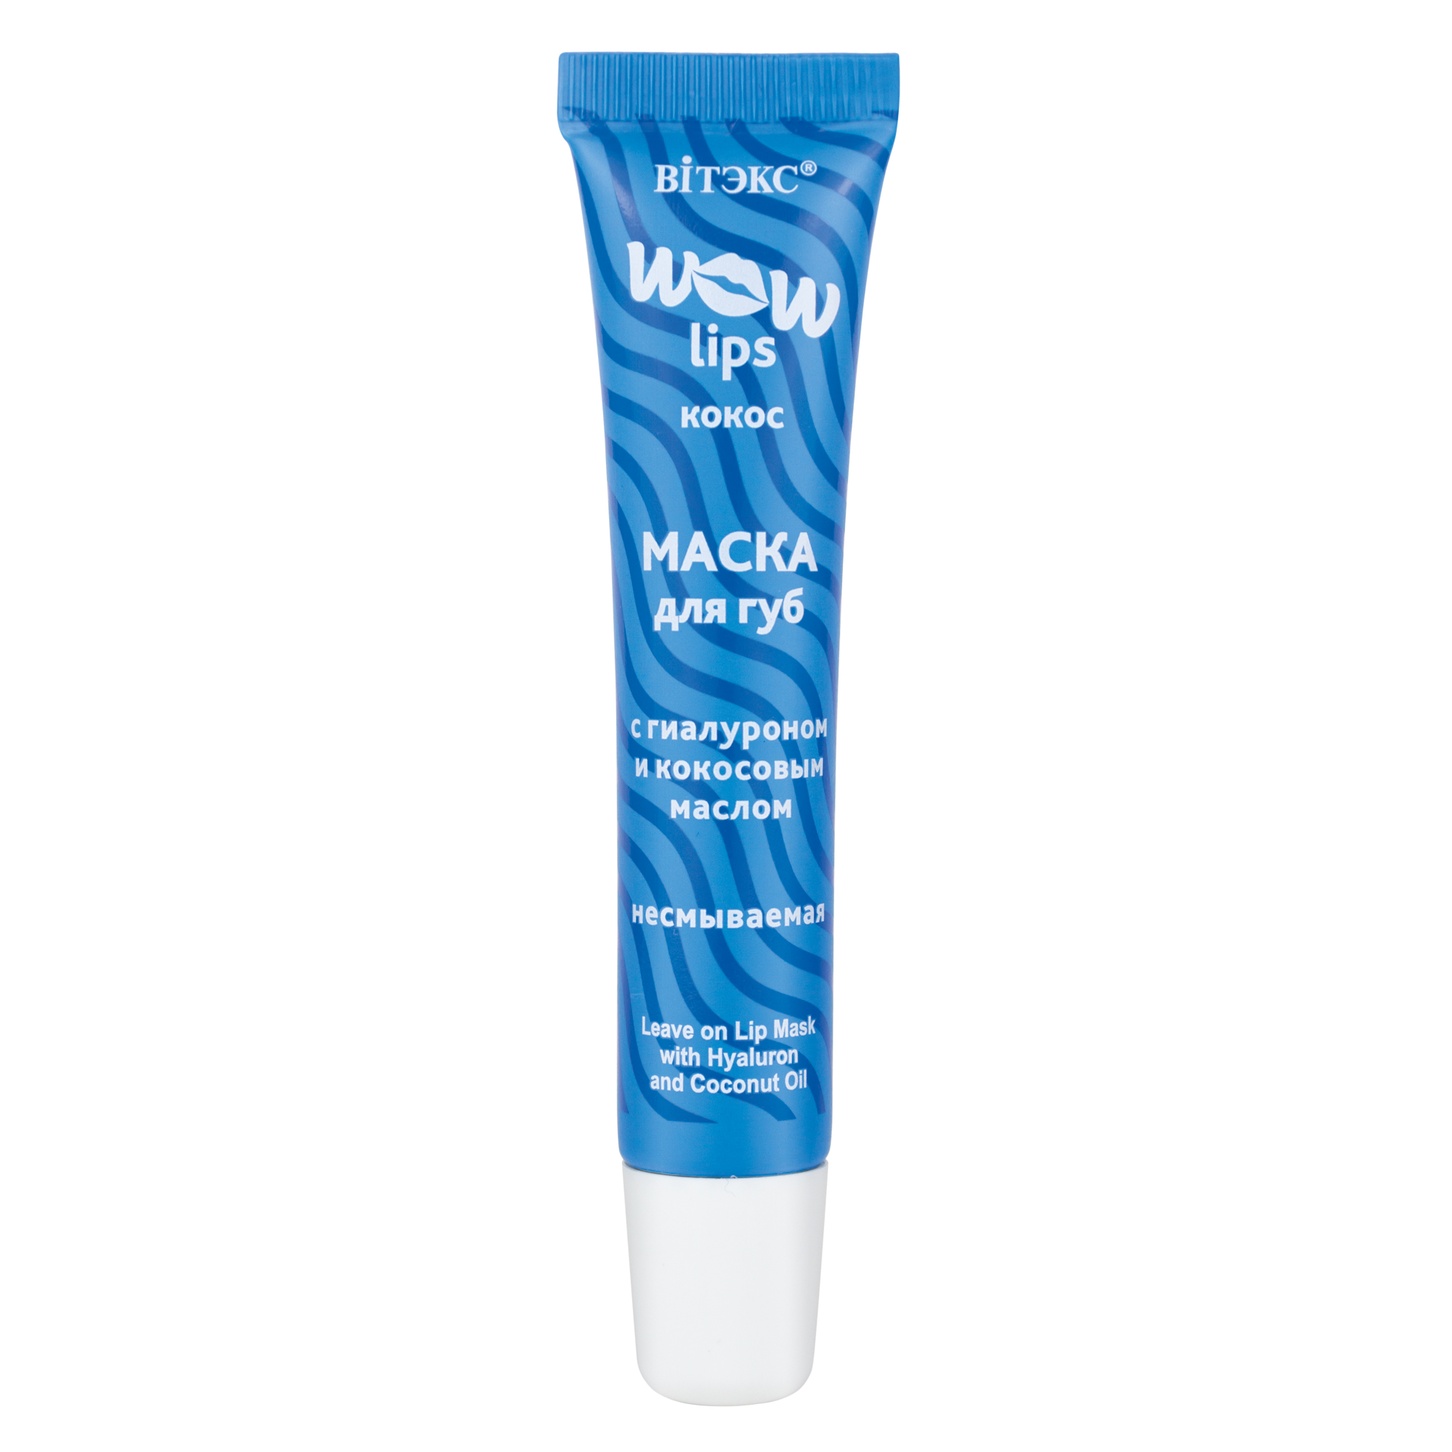 Маска для губ WOW LIPS с гиалуроном и кокосовым маслом несмываемая,15мл /Витэкс/10/М